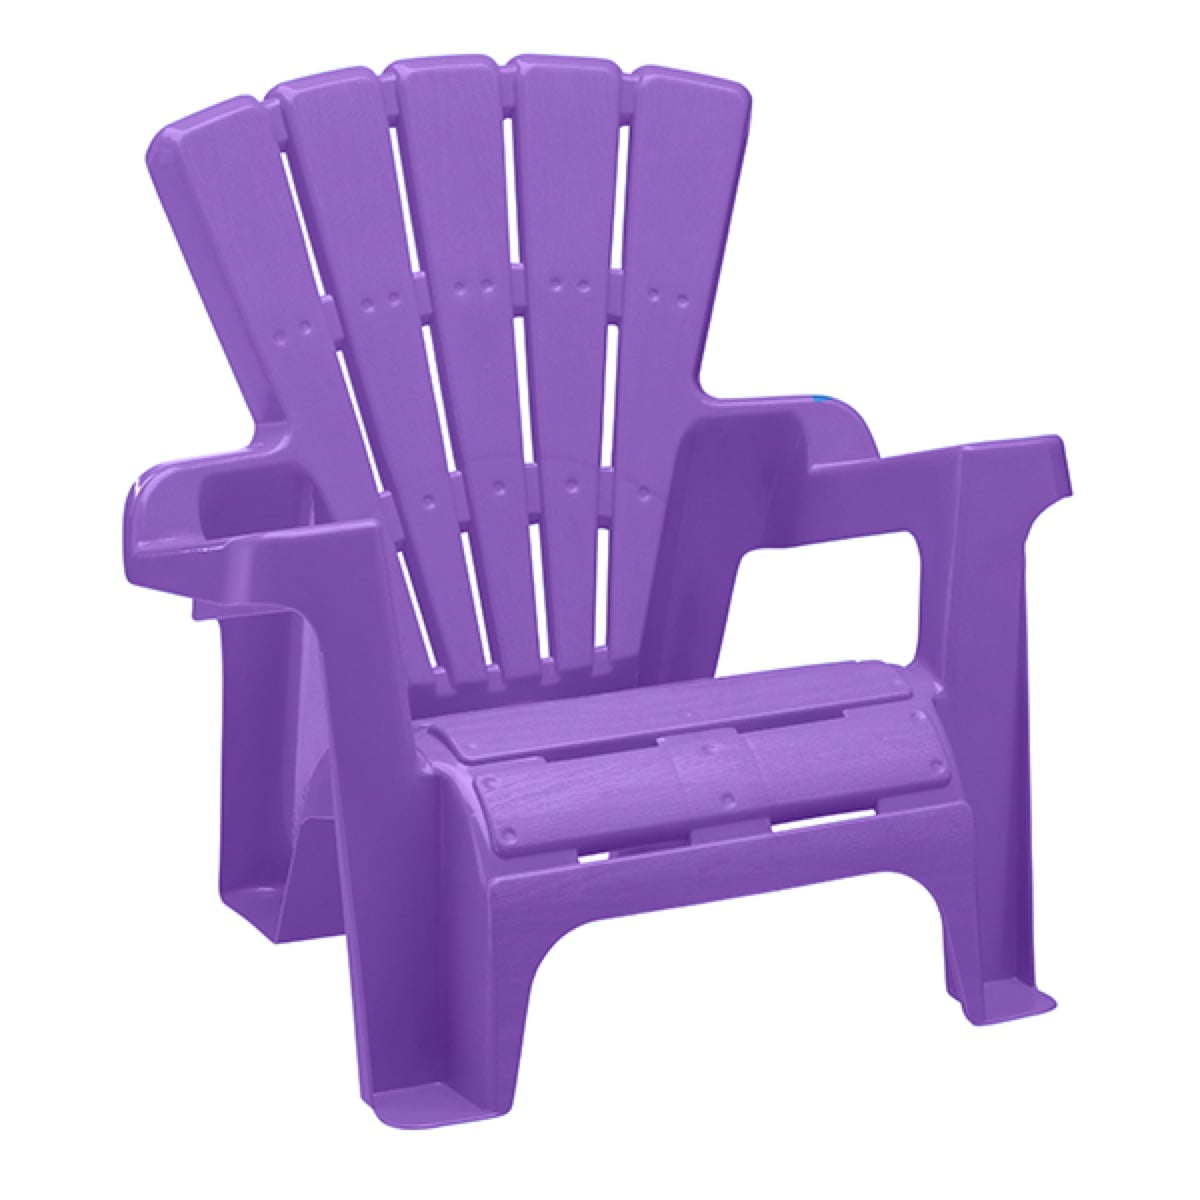 children's adirondack chair walmart